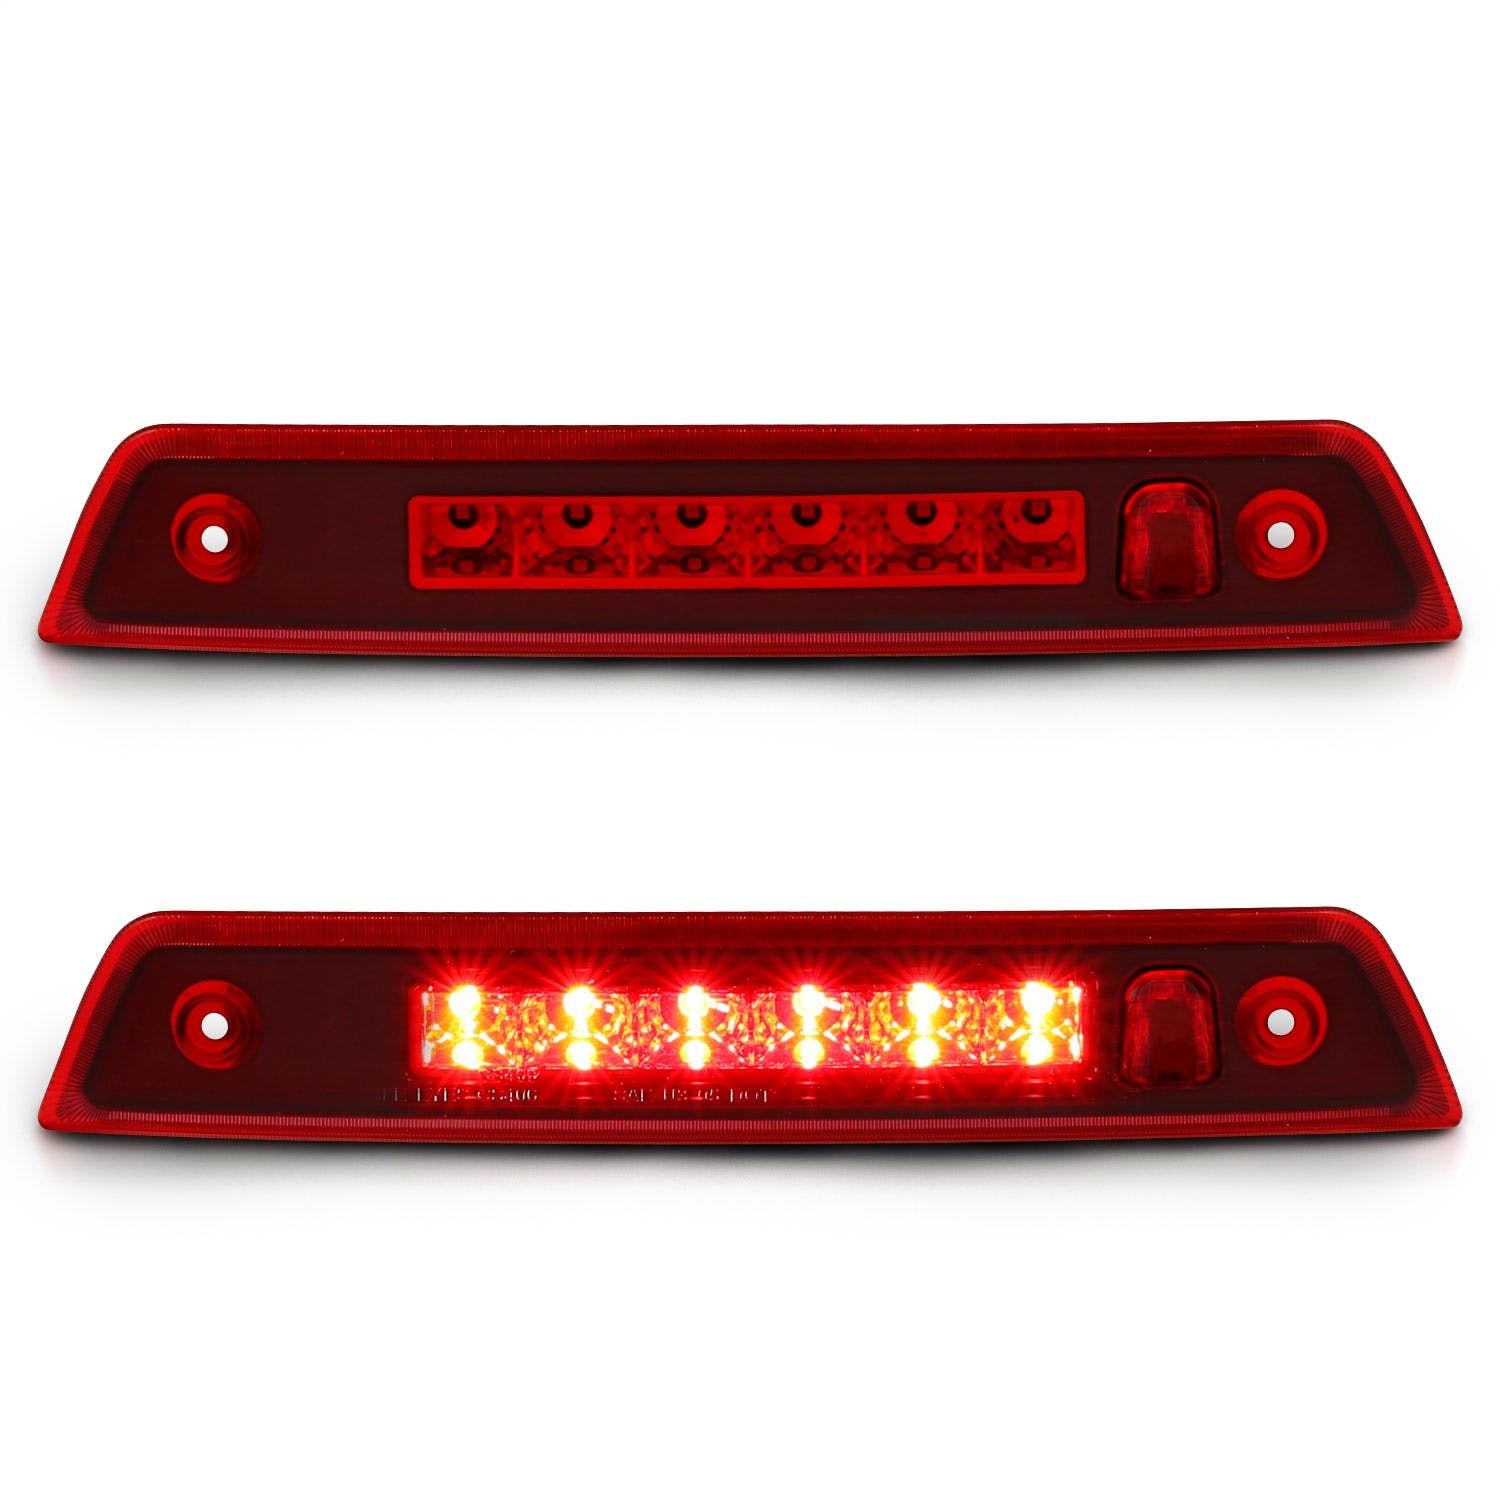 AnzoUSA 531108 LED 3rd Brake Light Red